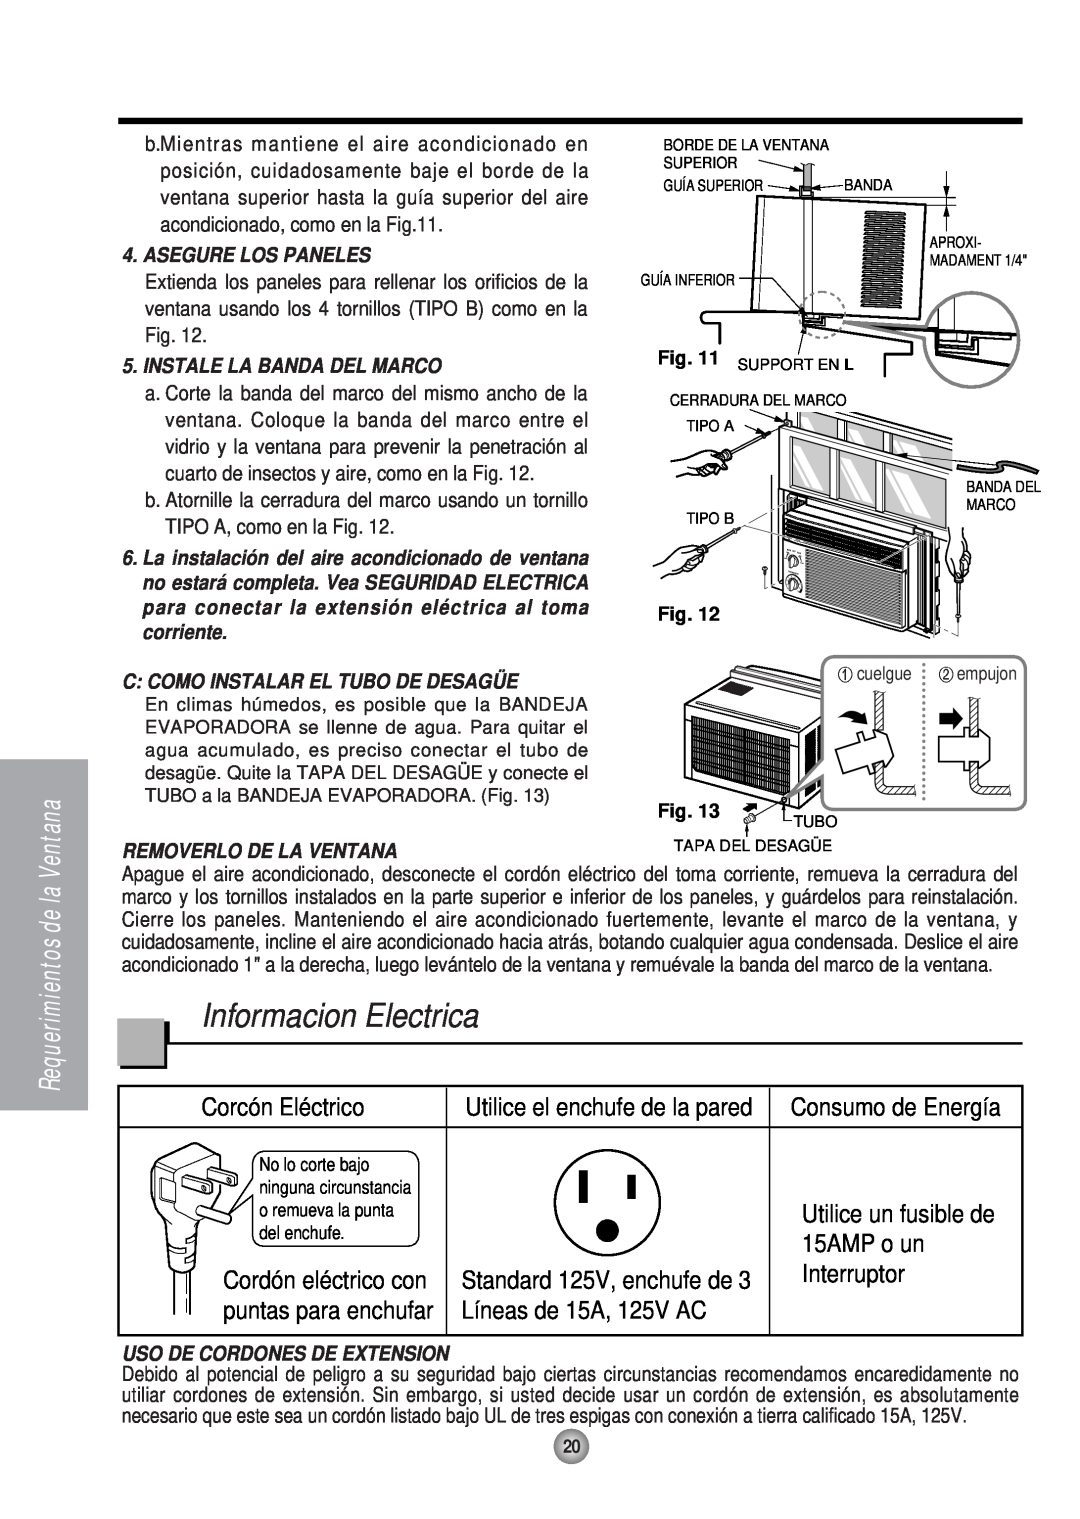 Panasonic HQ-2051RH manual Informacion Electrica, Corcón Eléctrico, Utilice el enchufe de la pared, 15AMP o un, Interruptor 